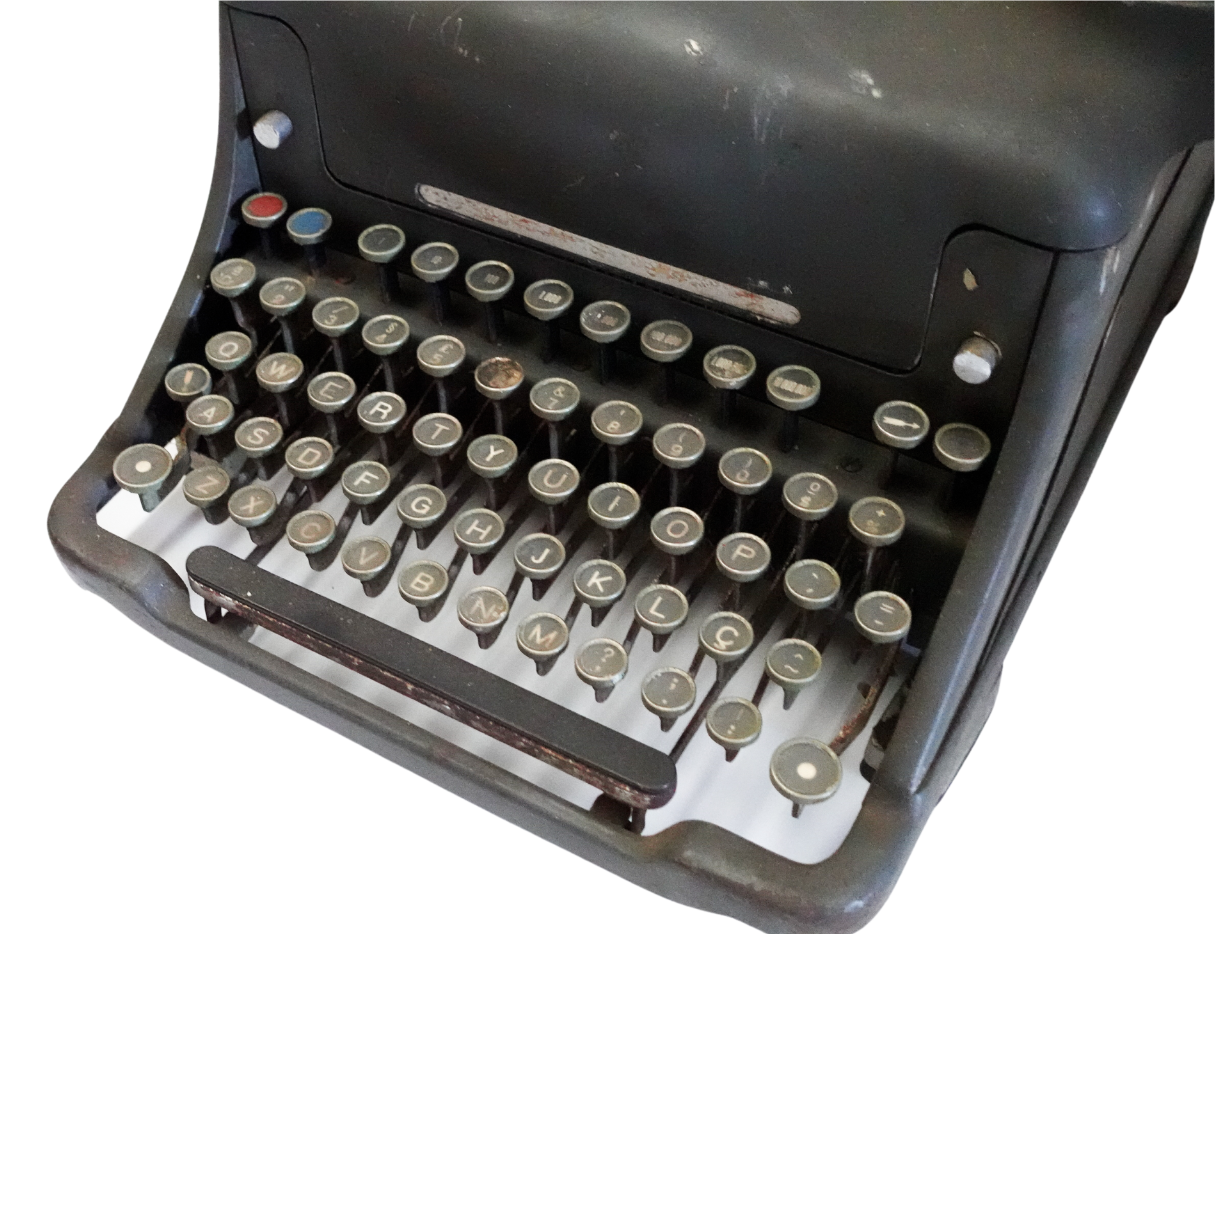 Máquina de Escrever Antiga Olivetti dos anos 1930